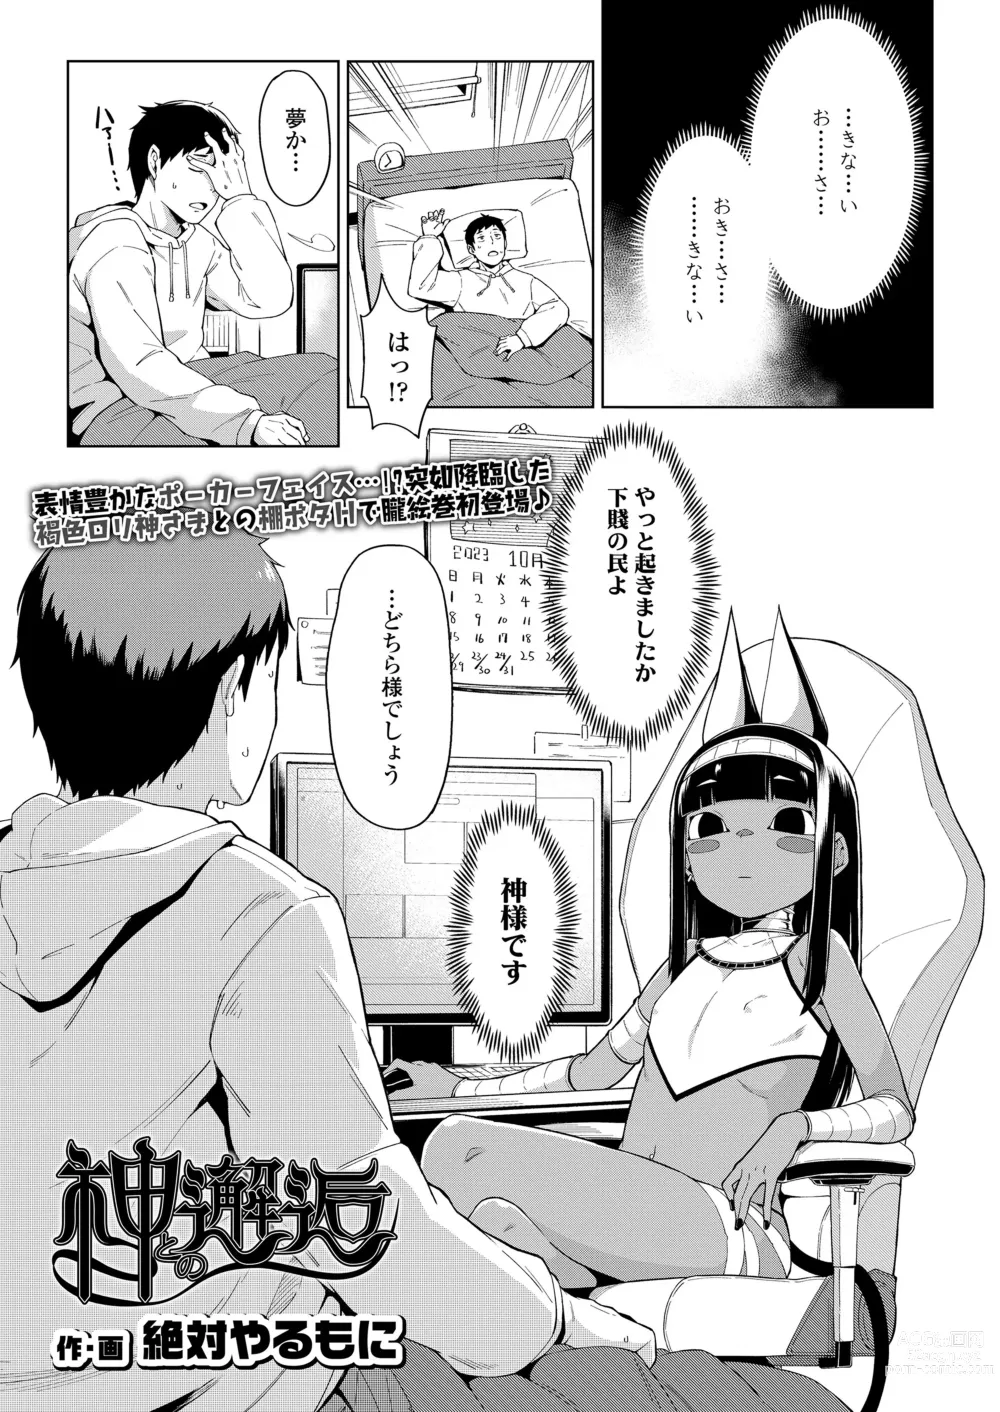 Page 3 of manga Towako Oboro Emaki 13